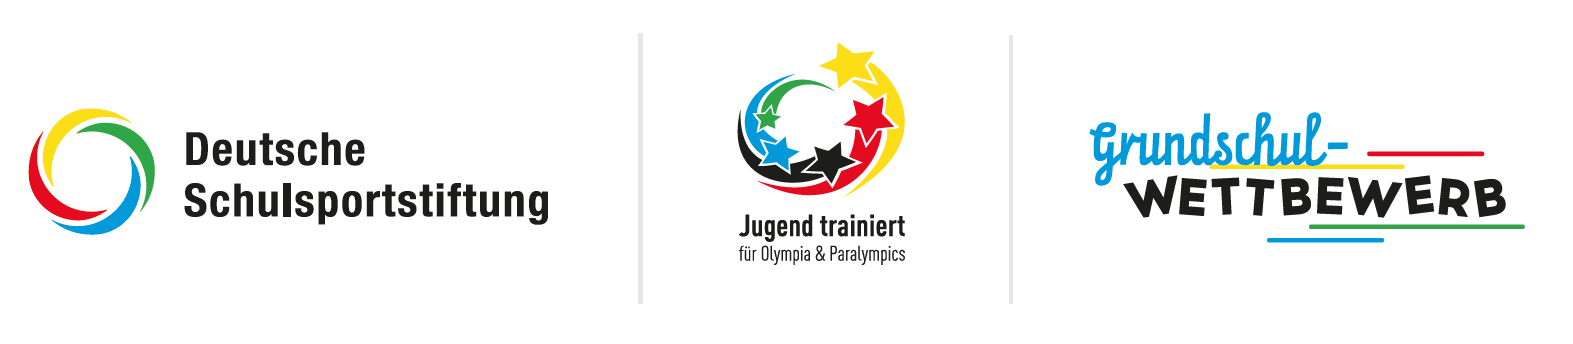 Jugend Trainiert für Olympia Logo, Deutsche Schulsportstiftung Logo, Grundschulwettbewerb Logo